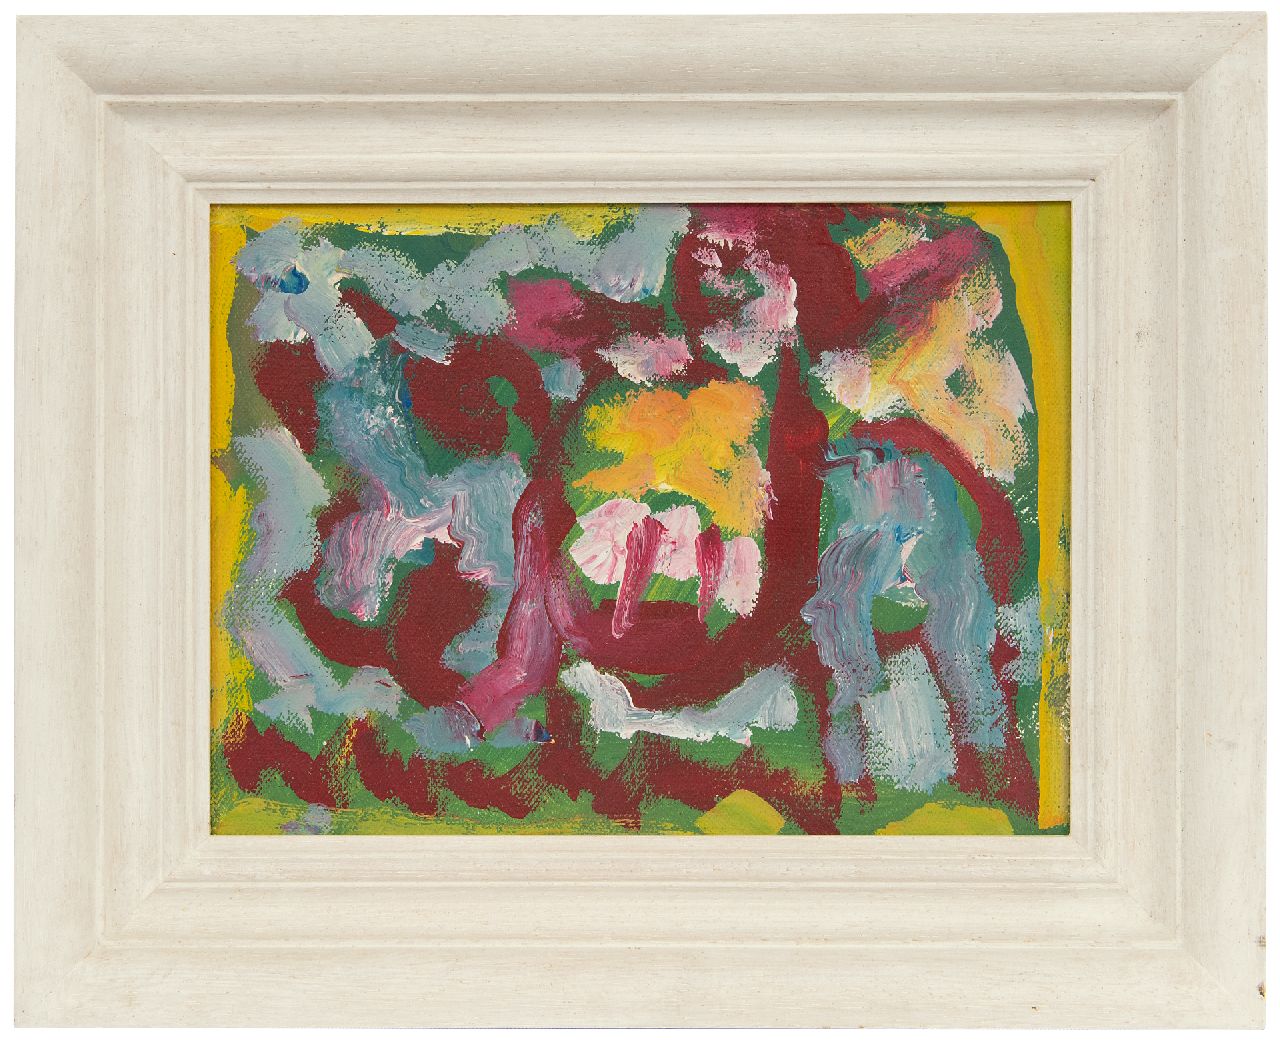 Heyboer A.  | Anton Heyboer | Schilderijen te koop aangeboden | Kleurrijke compositie, olieverf op doek 18,9 x 24,0 cm, gesigneerd verso